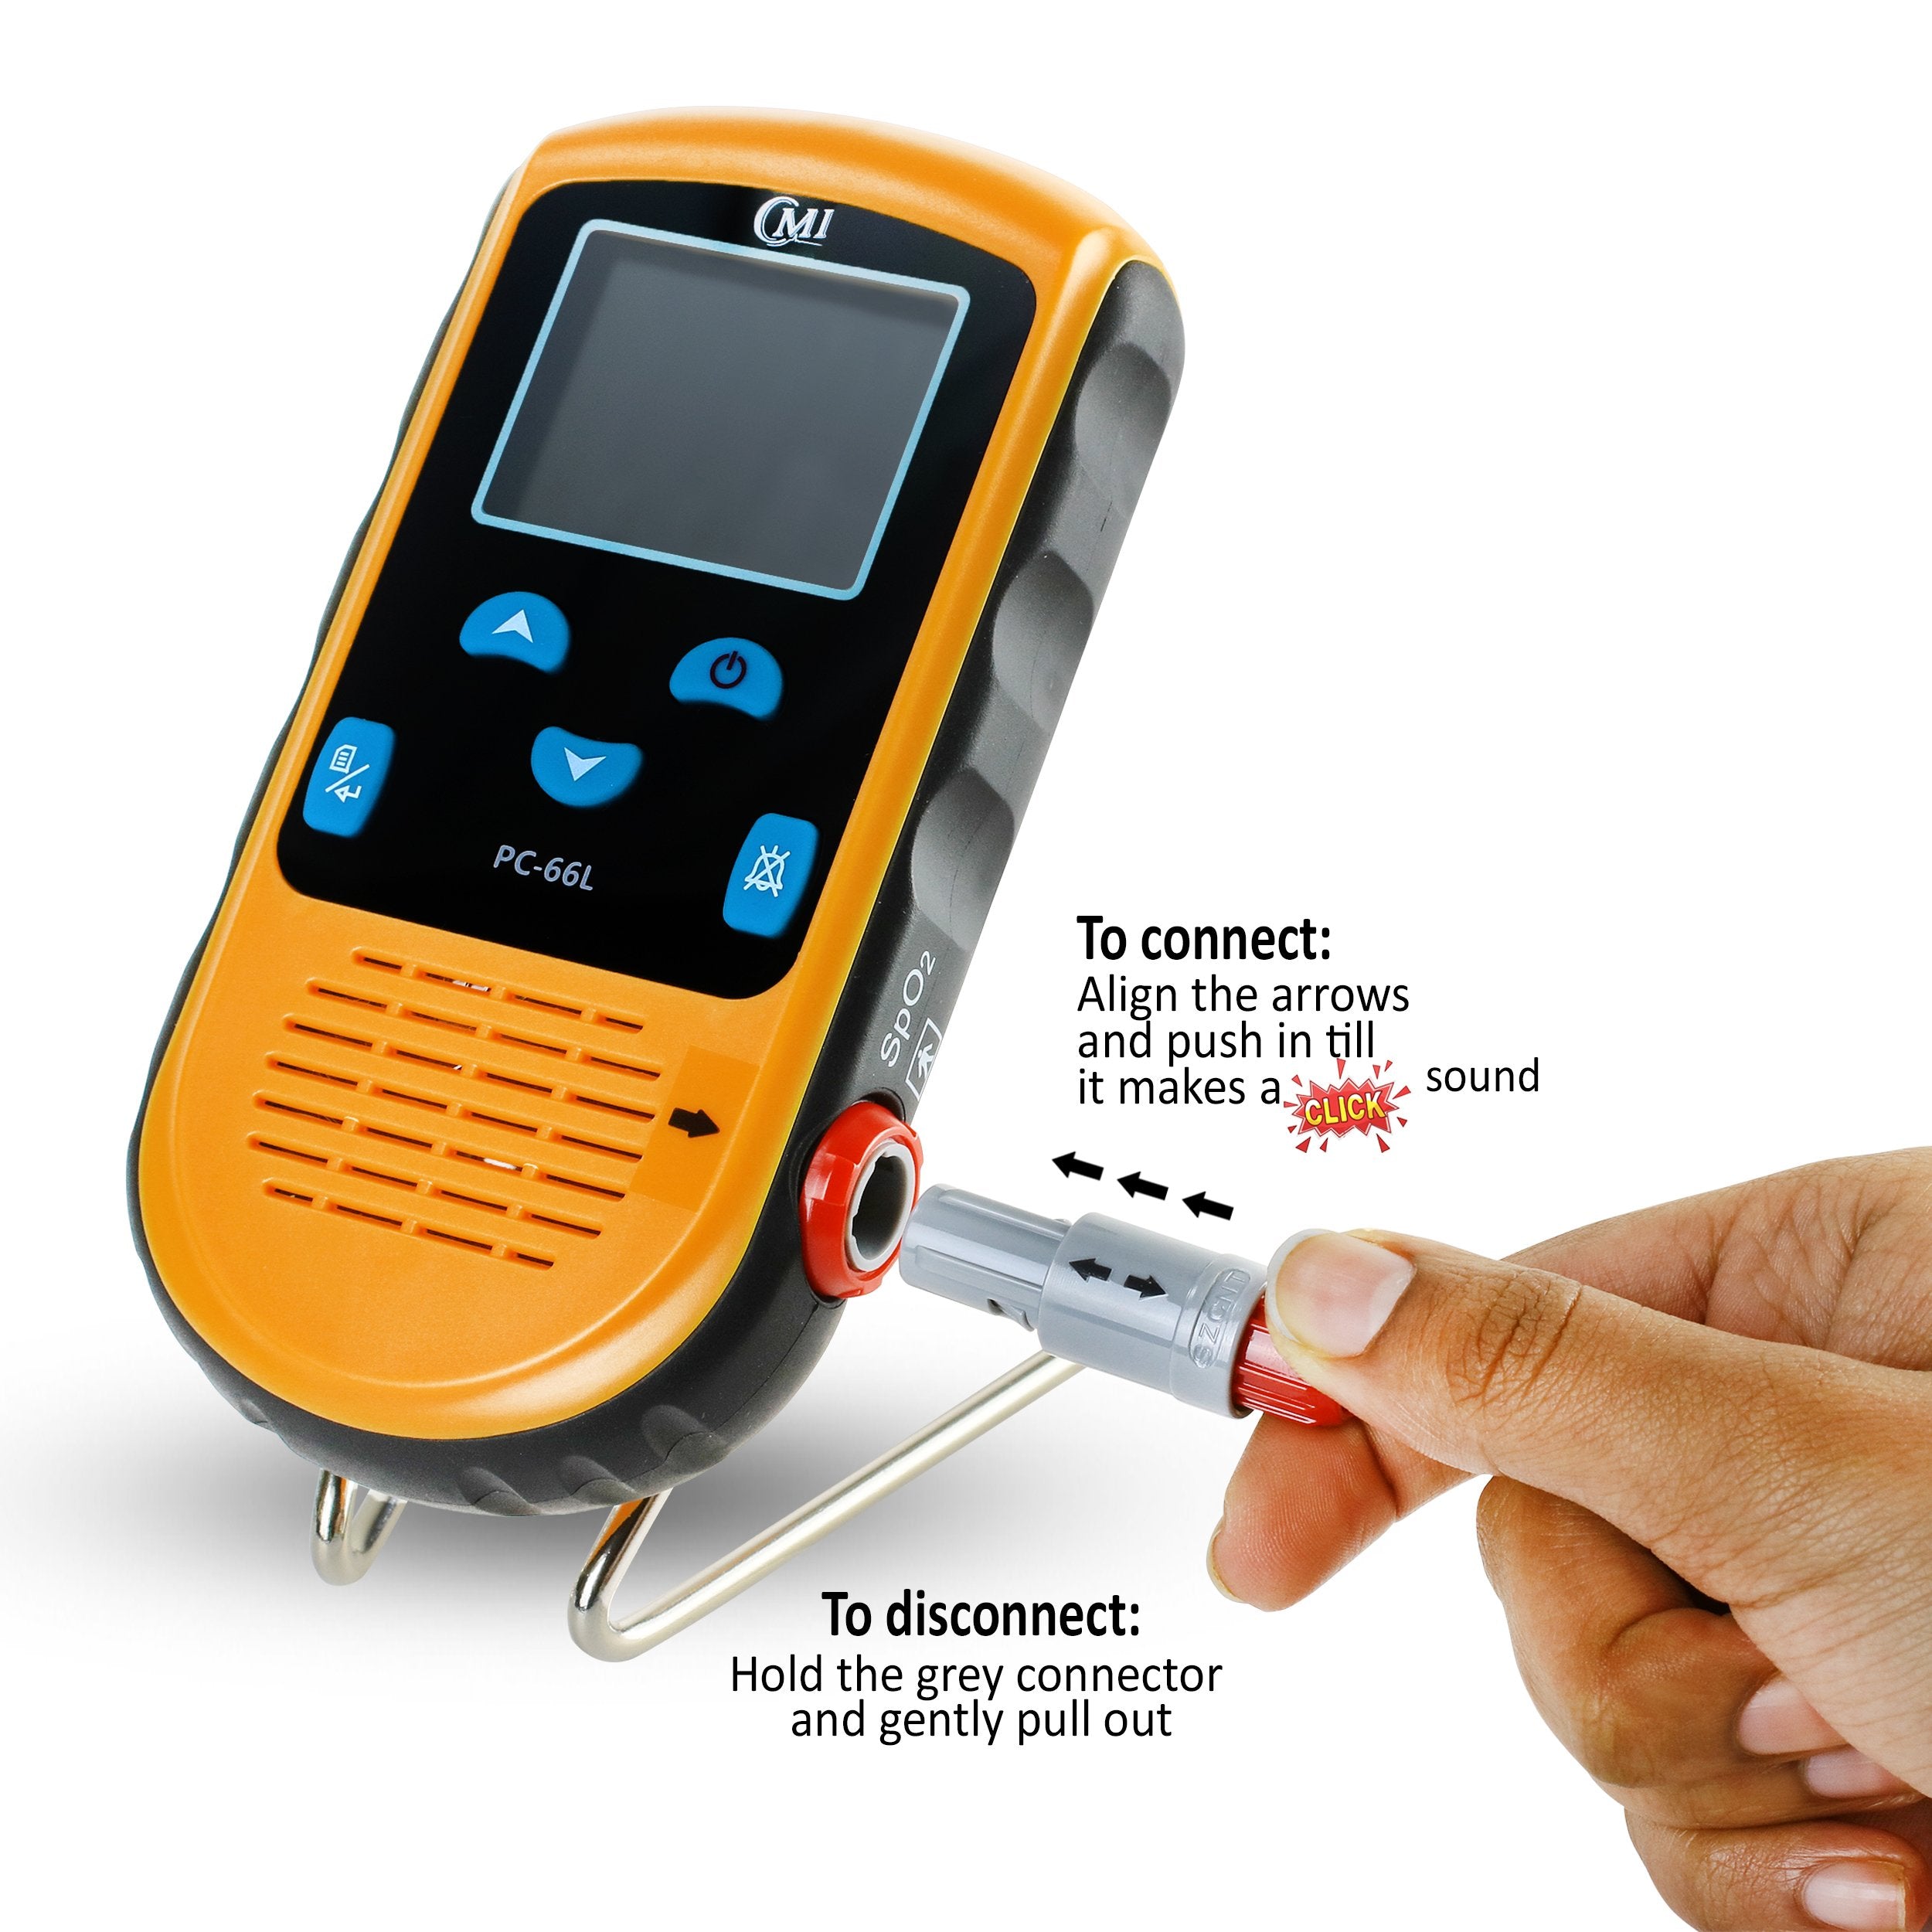 Saturometre oxymetre portable batterie rechargeable secteur ZeniXx